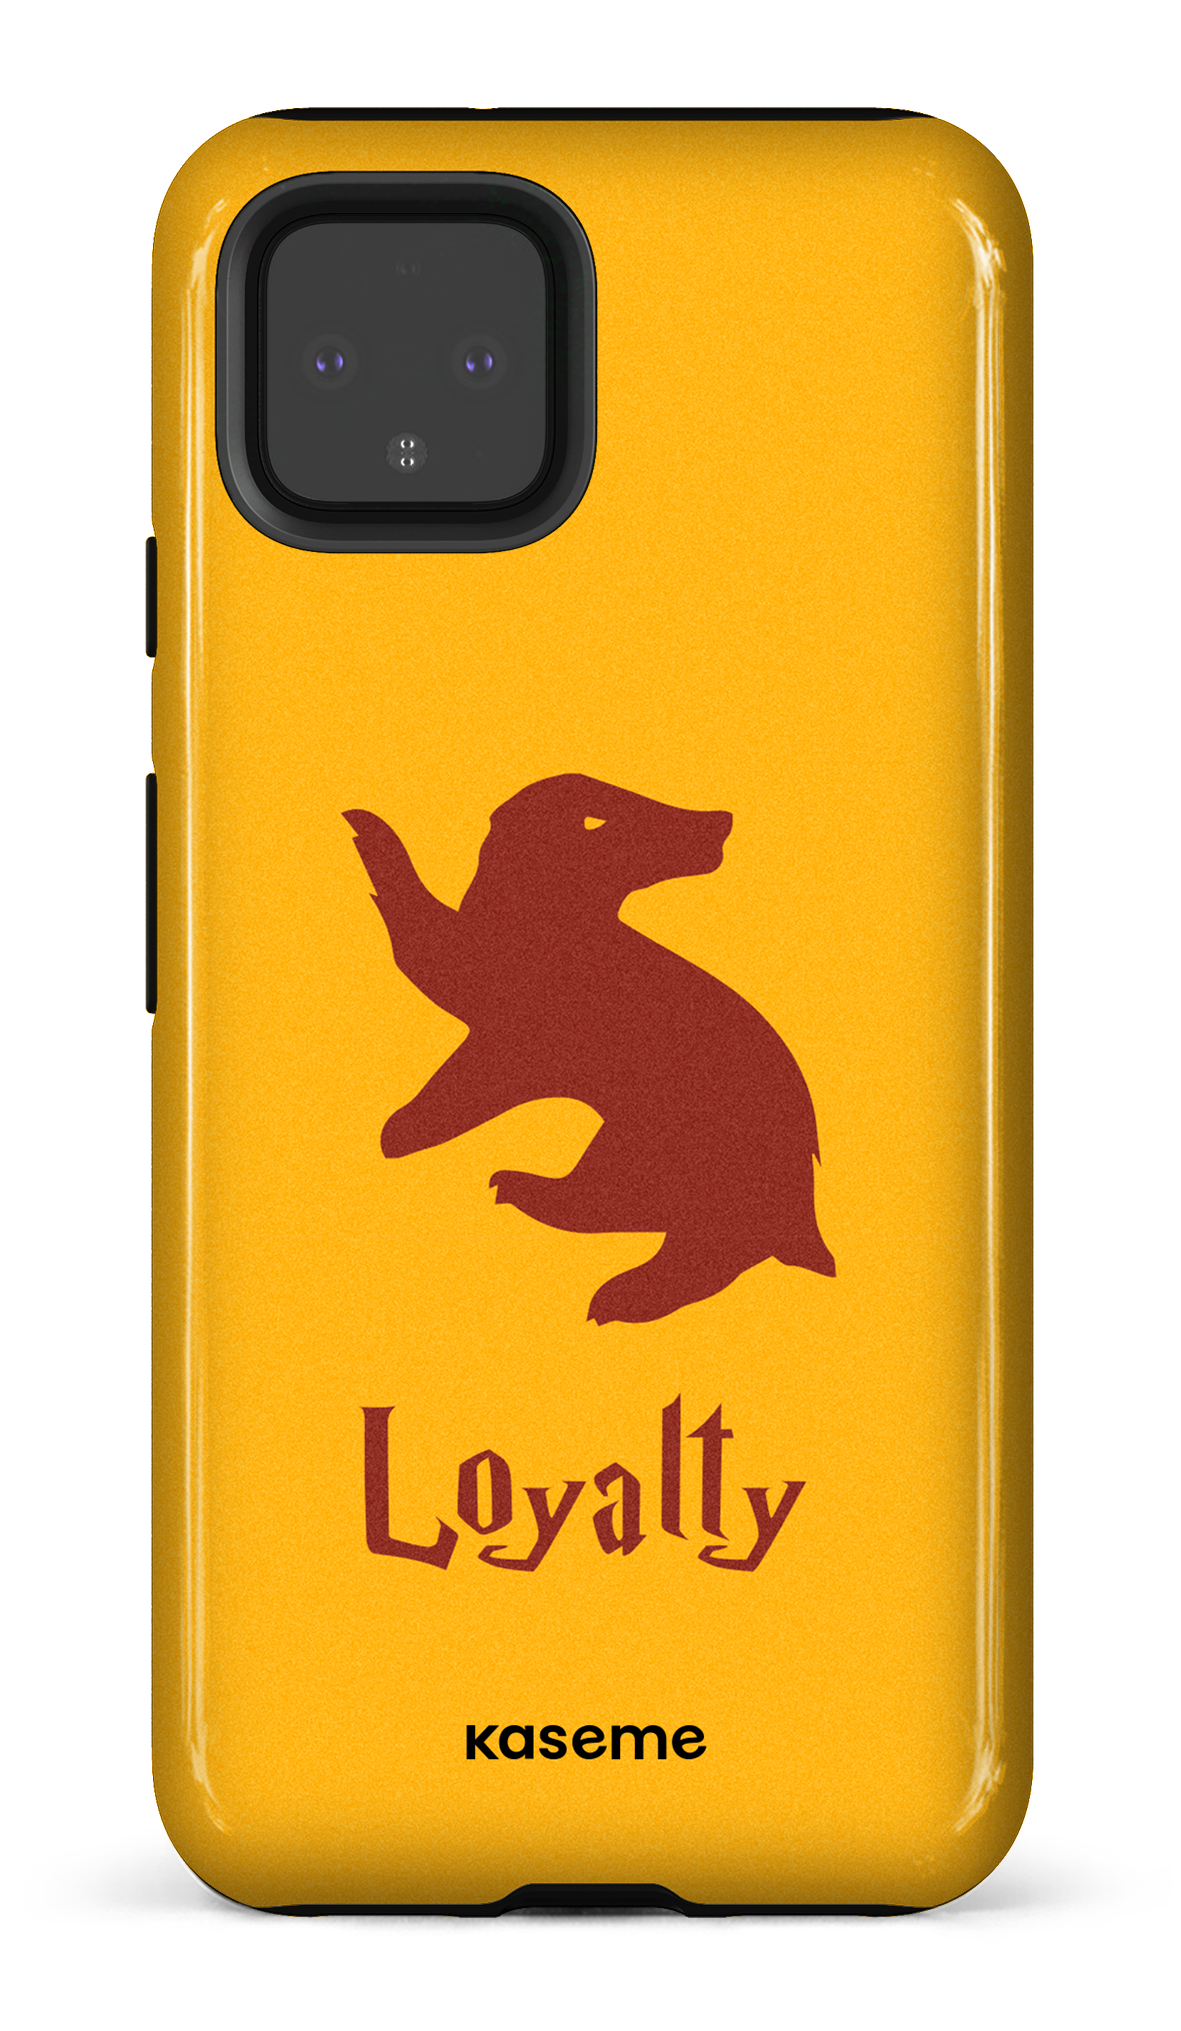 Loyalty - Google Pixel 4